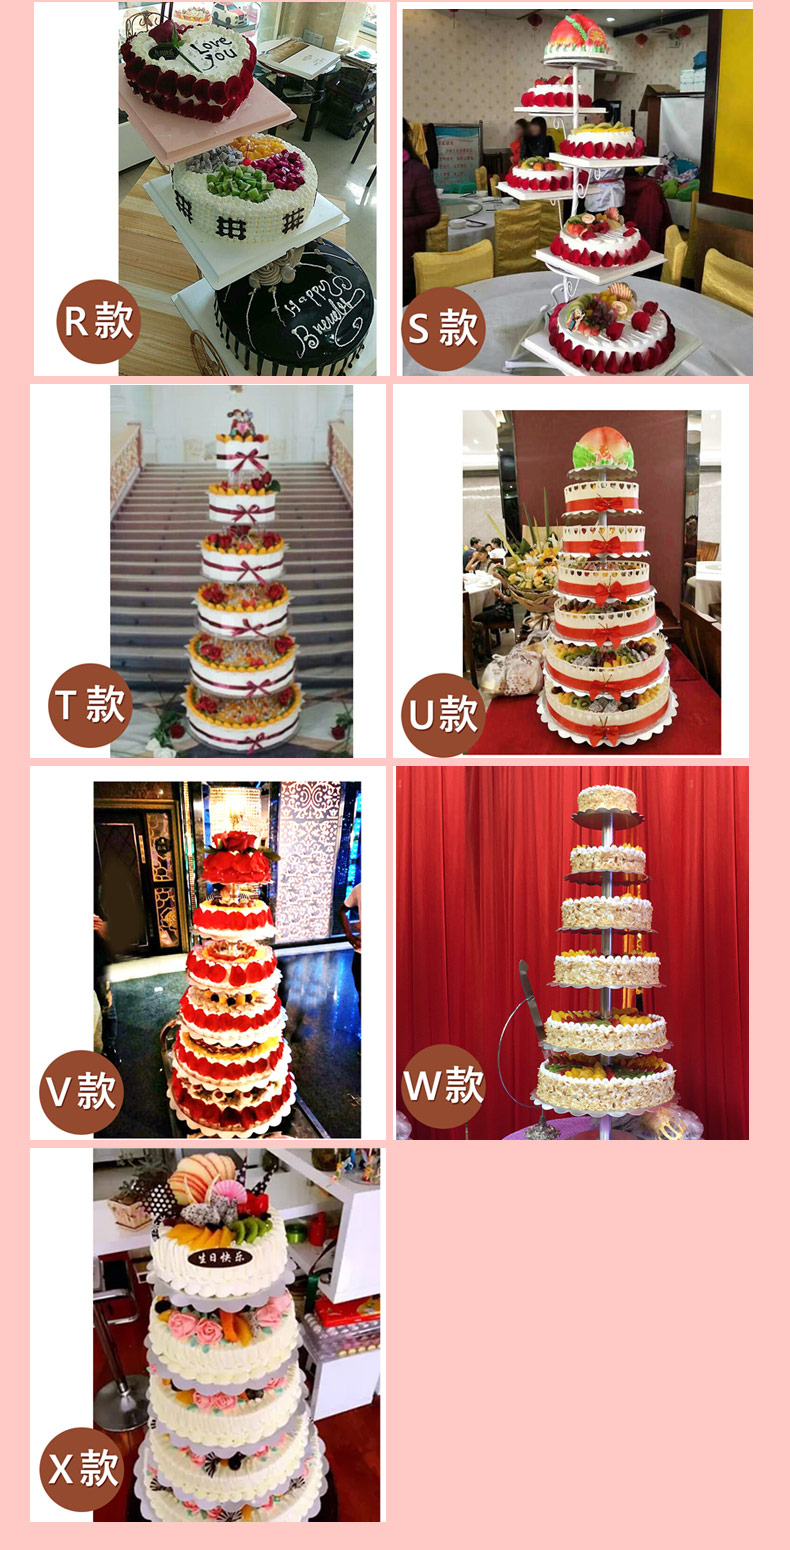 网红水果多层三层生日蛋糕全国同城配送当日送达定制大型蛋糕祝寿庆典